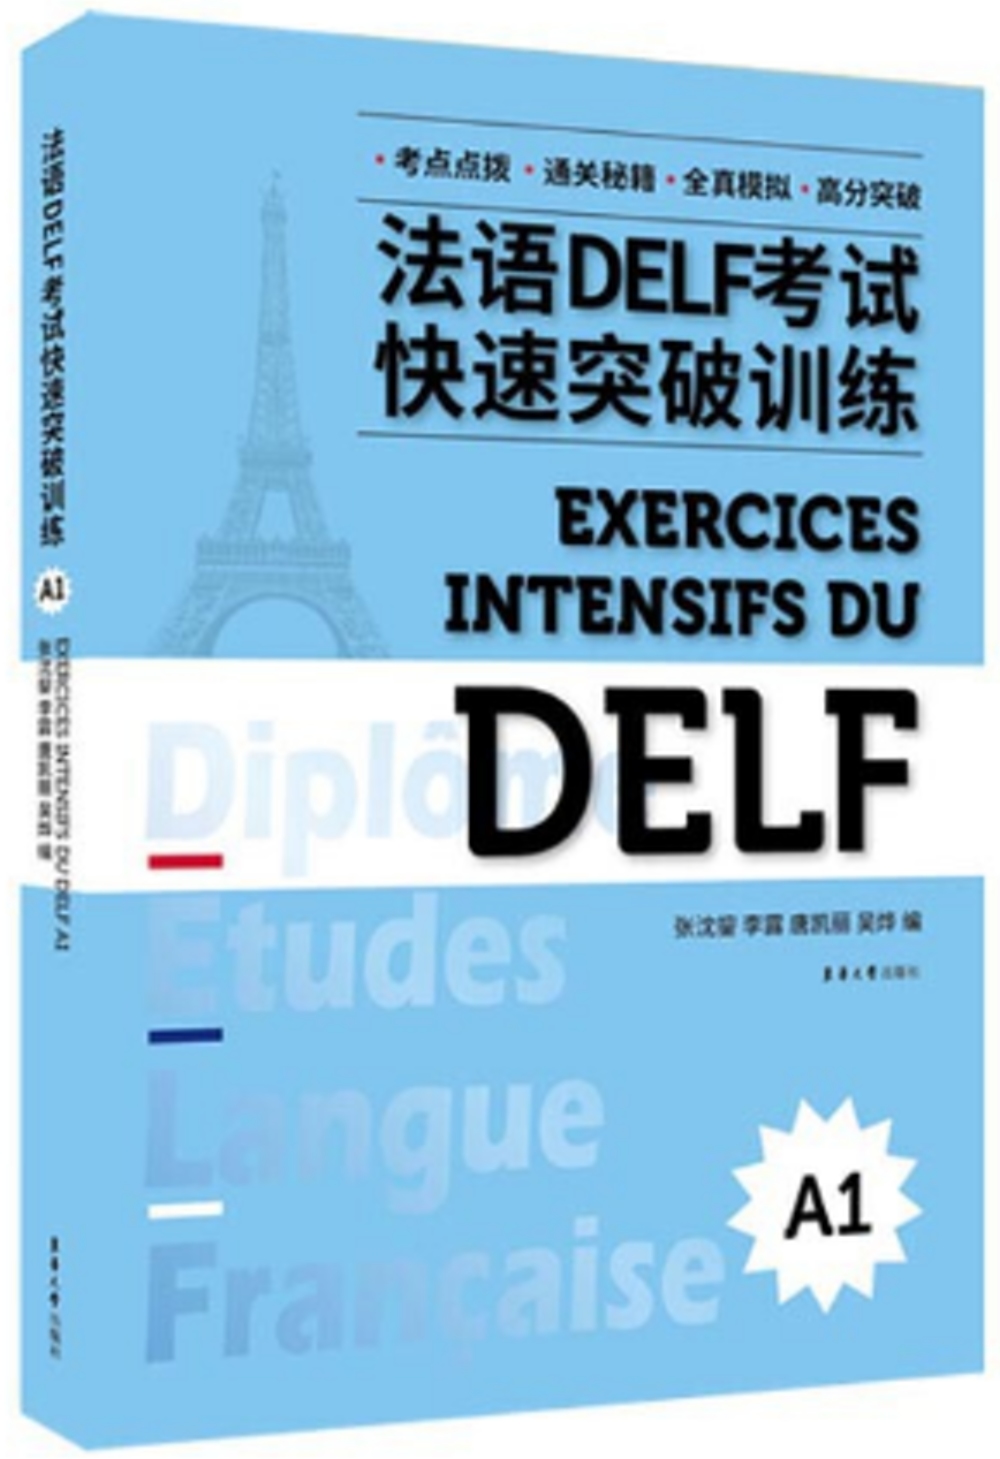 法語DELF考試快速突破訓練(A1)